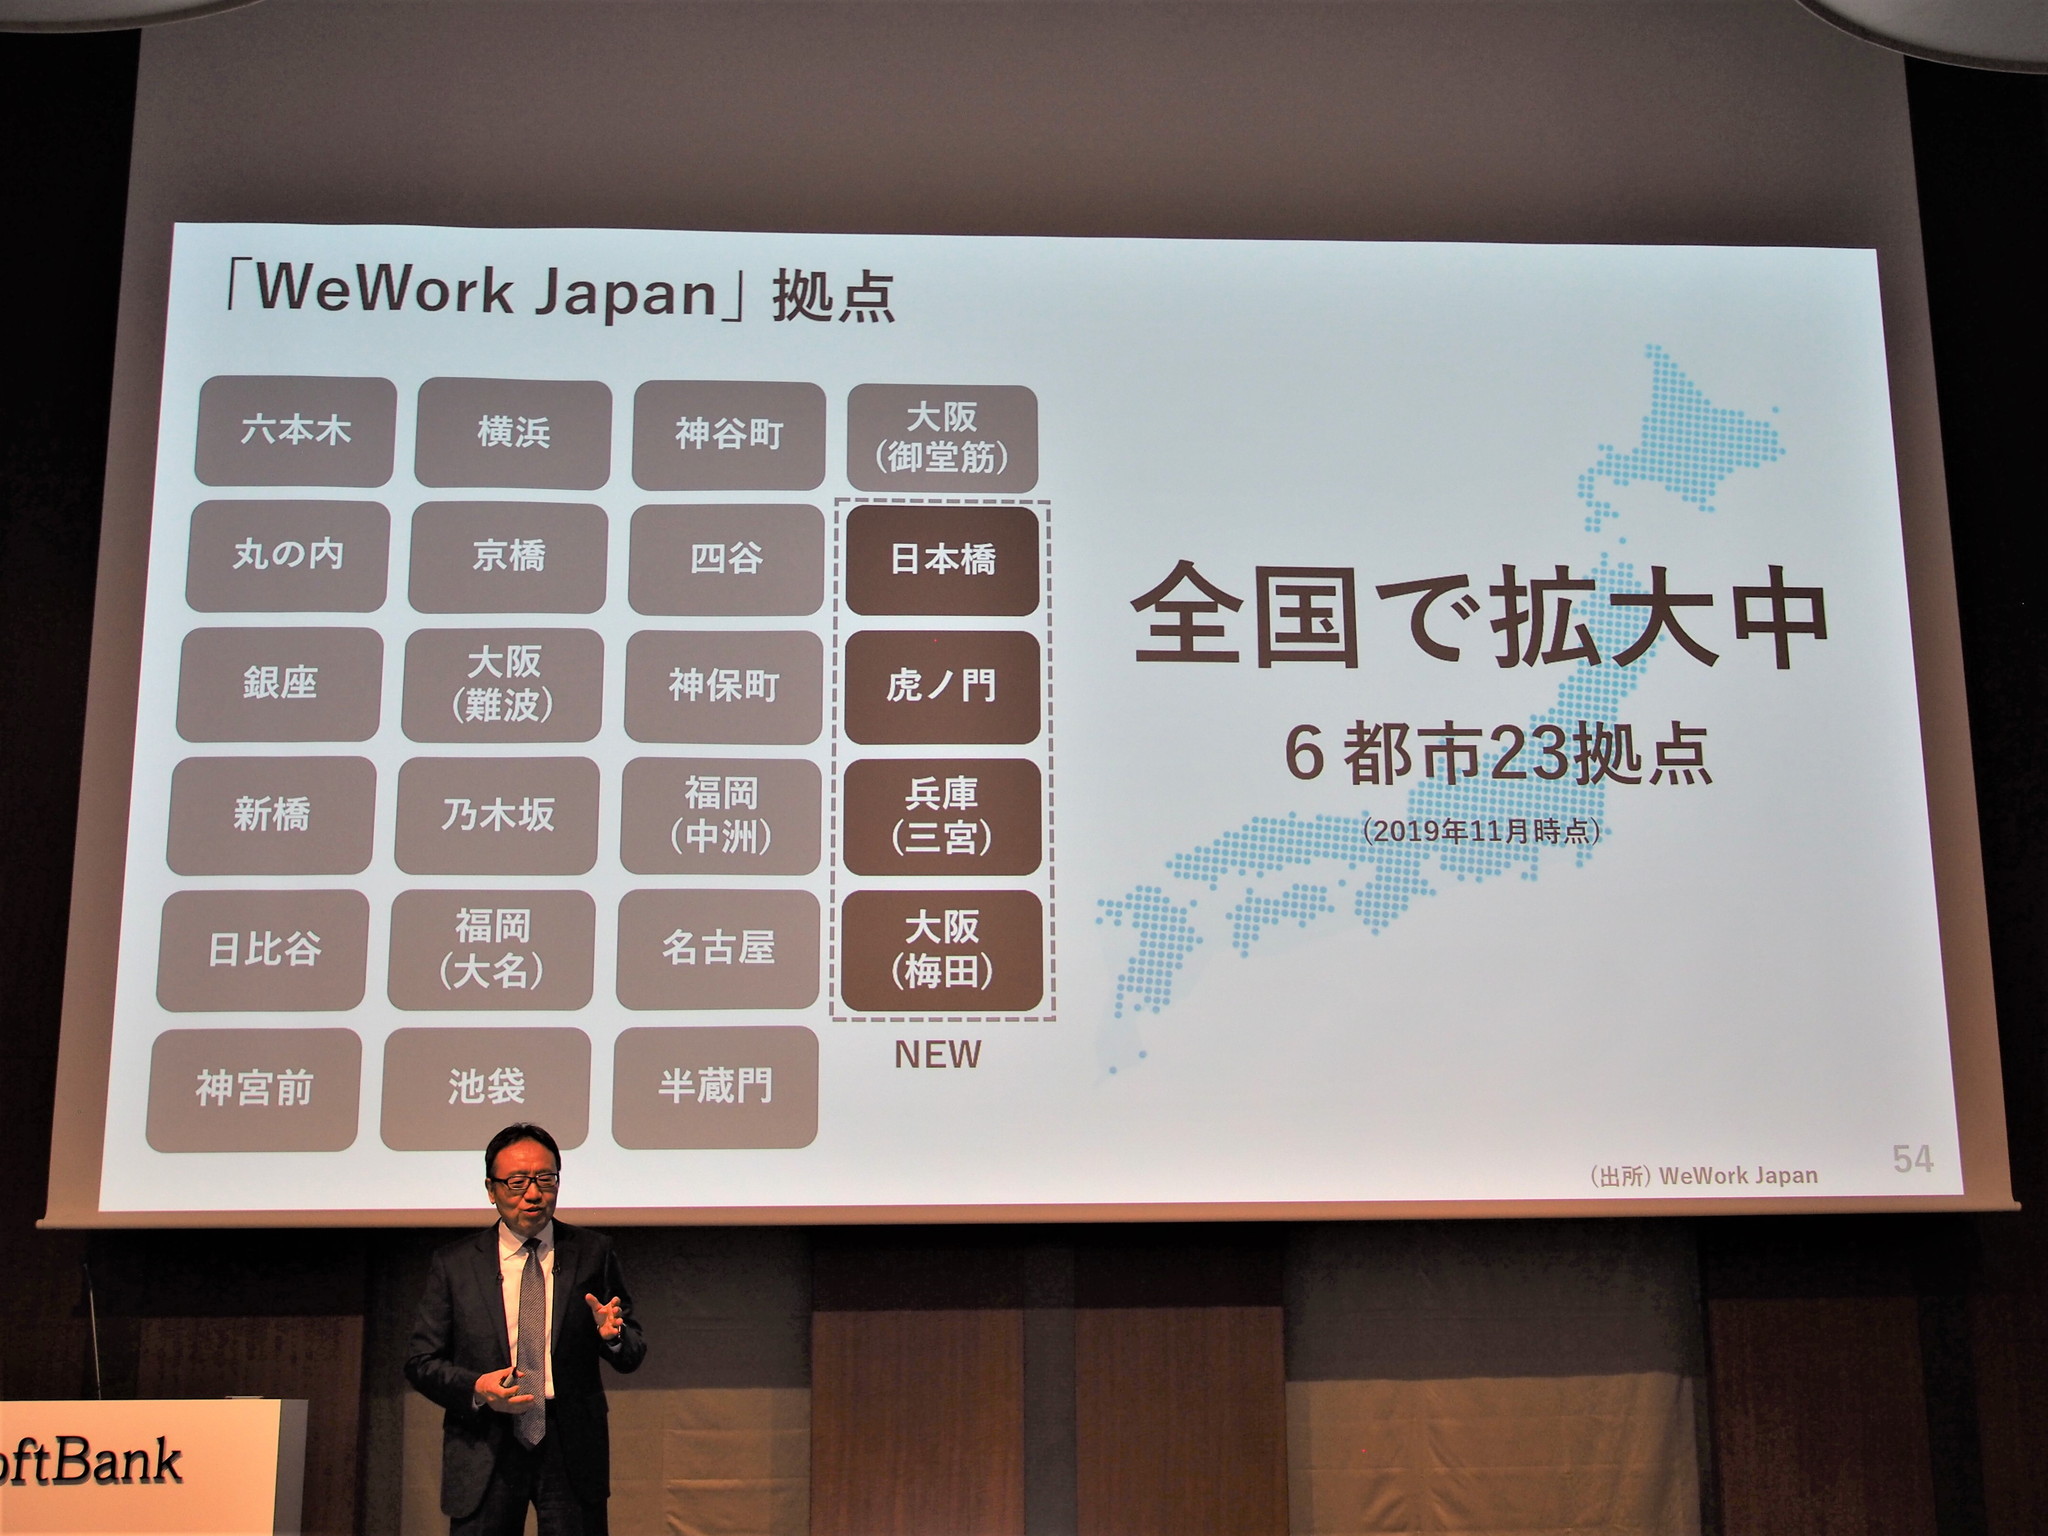 ウィワーク・カンパニーは上場直前に多数の問題が発覚し、経営危機に陥っているが、日本での合弁によるWeWorkの事業は順調に拡大。6都市・23拠点にまで拡大したとのことだ